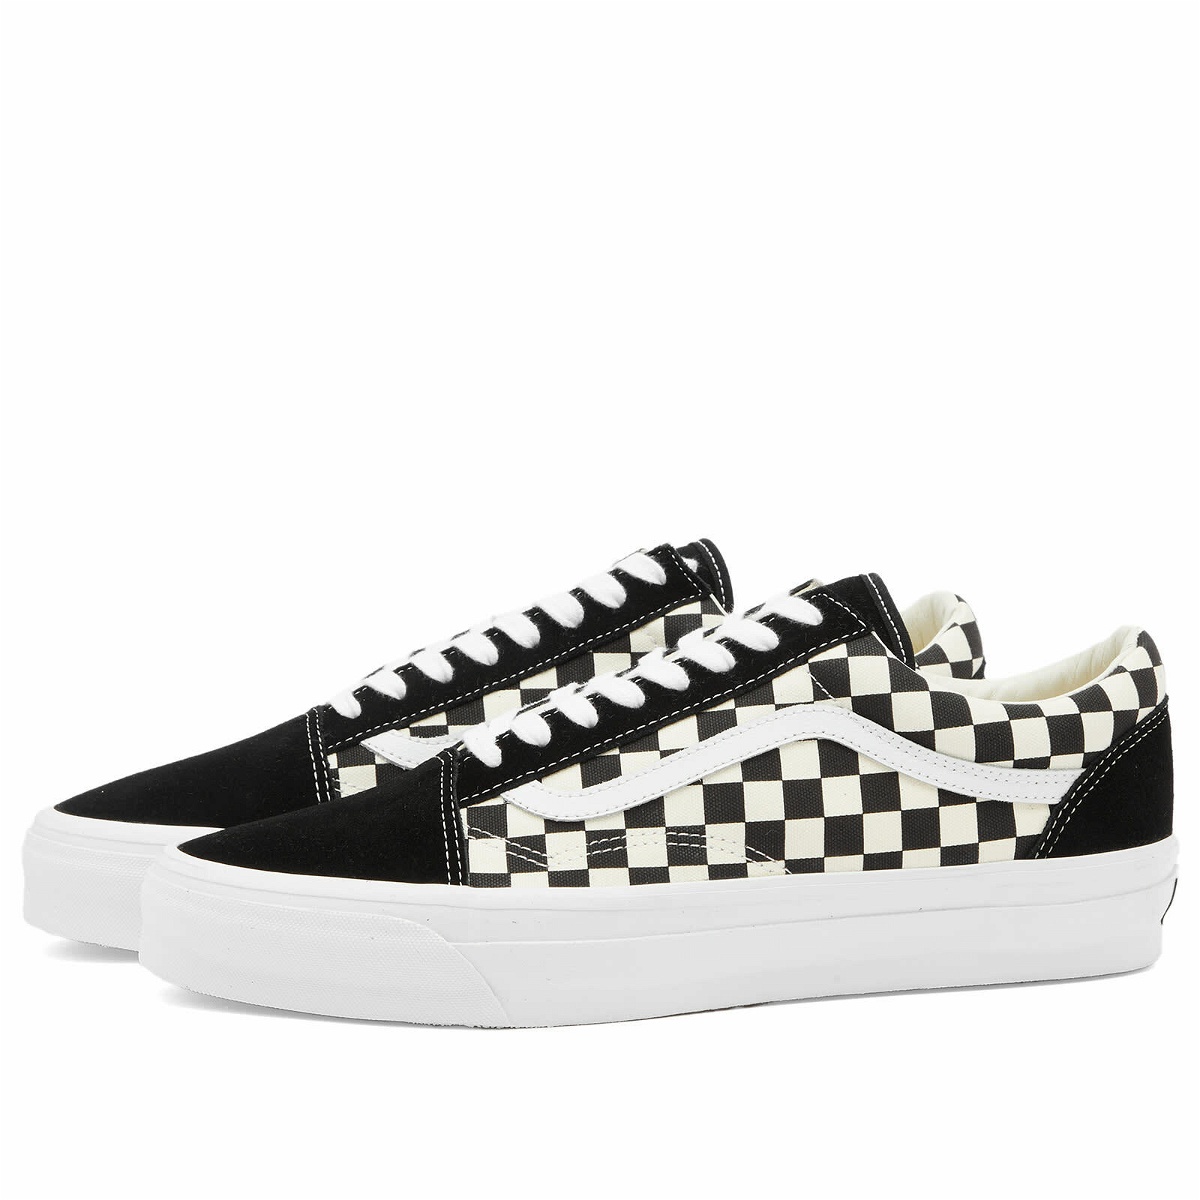 Photo: Vans Men's Old Skool 36 Sneakers in Lx Checkerboard Black/Off White